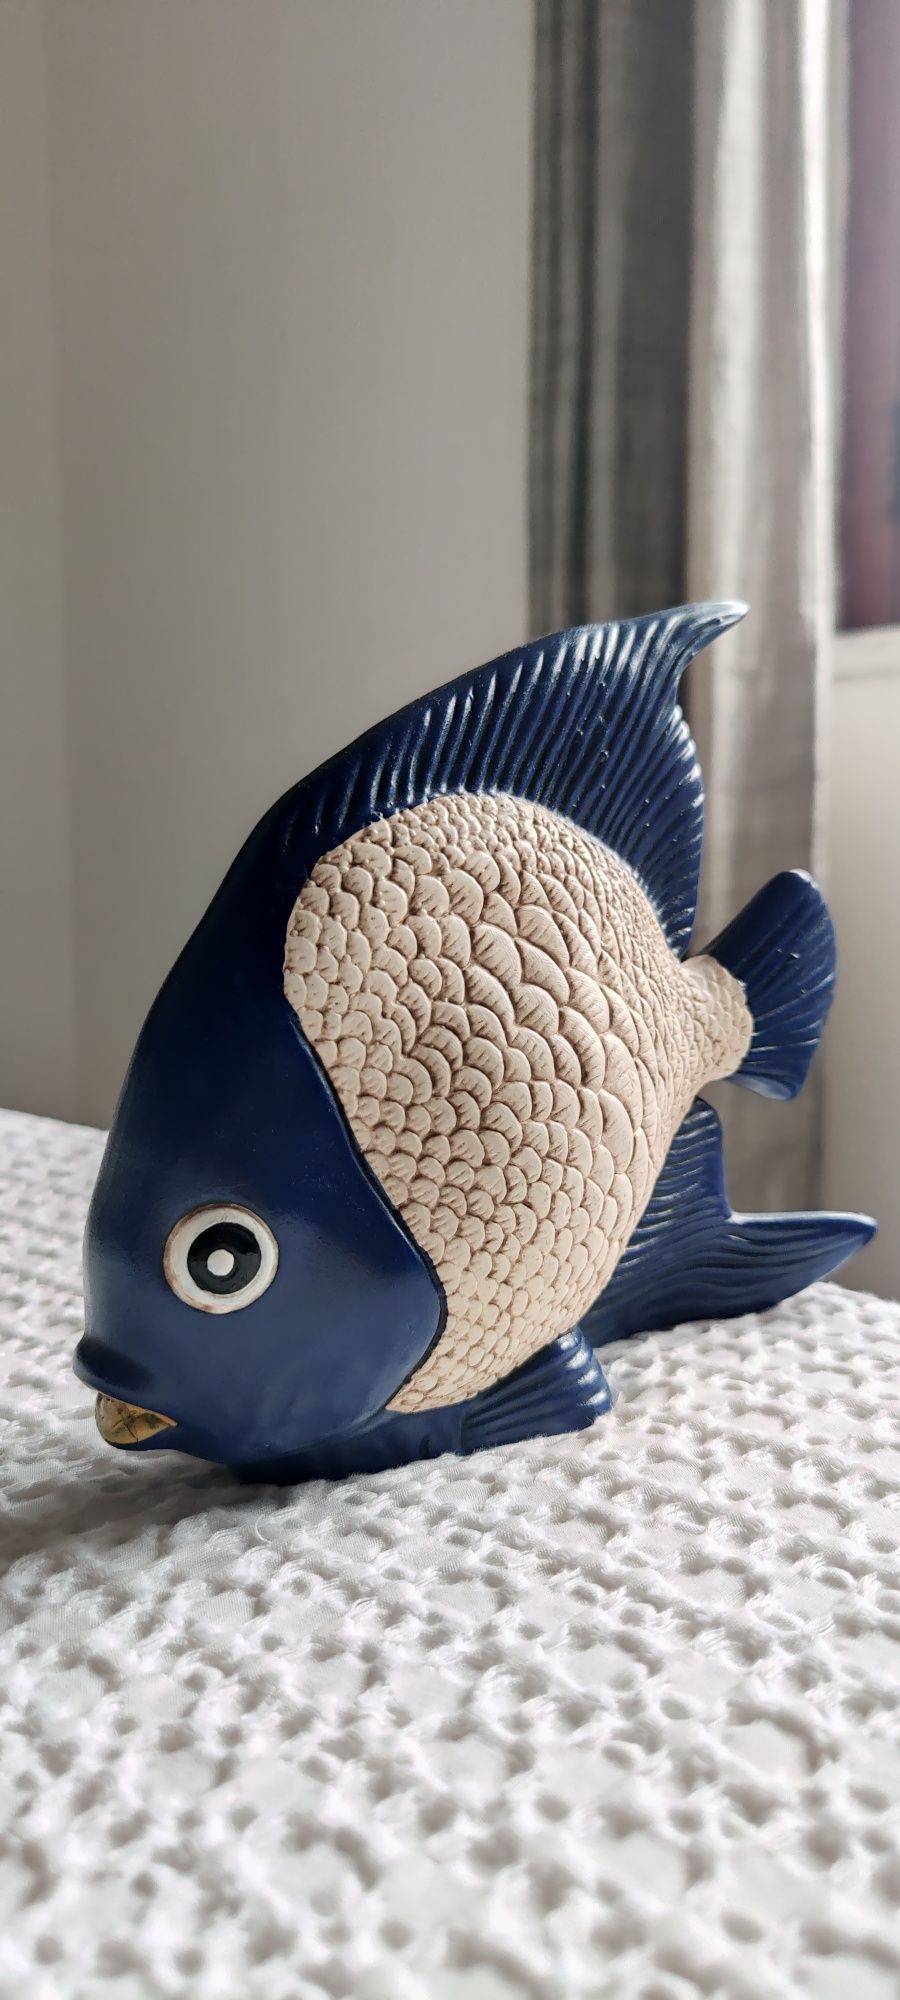 Bibelot decorativo peixe de cerâmica - azul, bege e amarelo